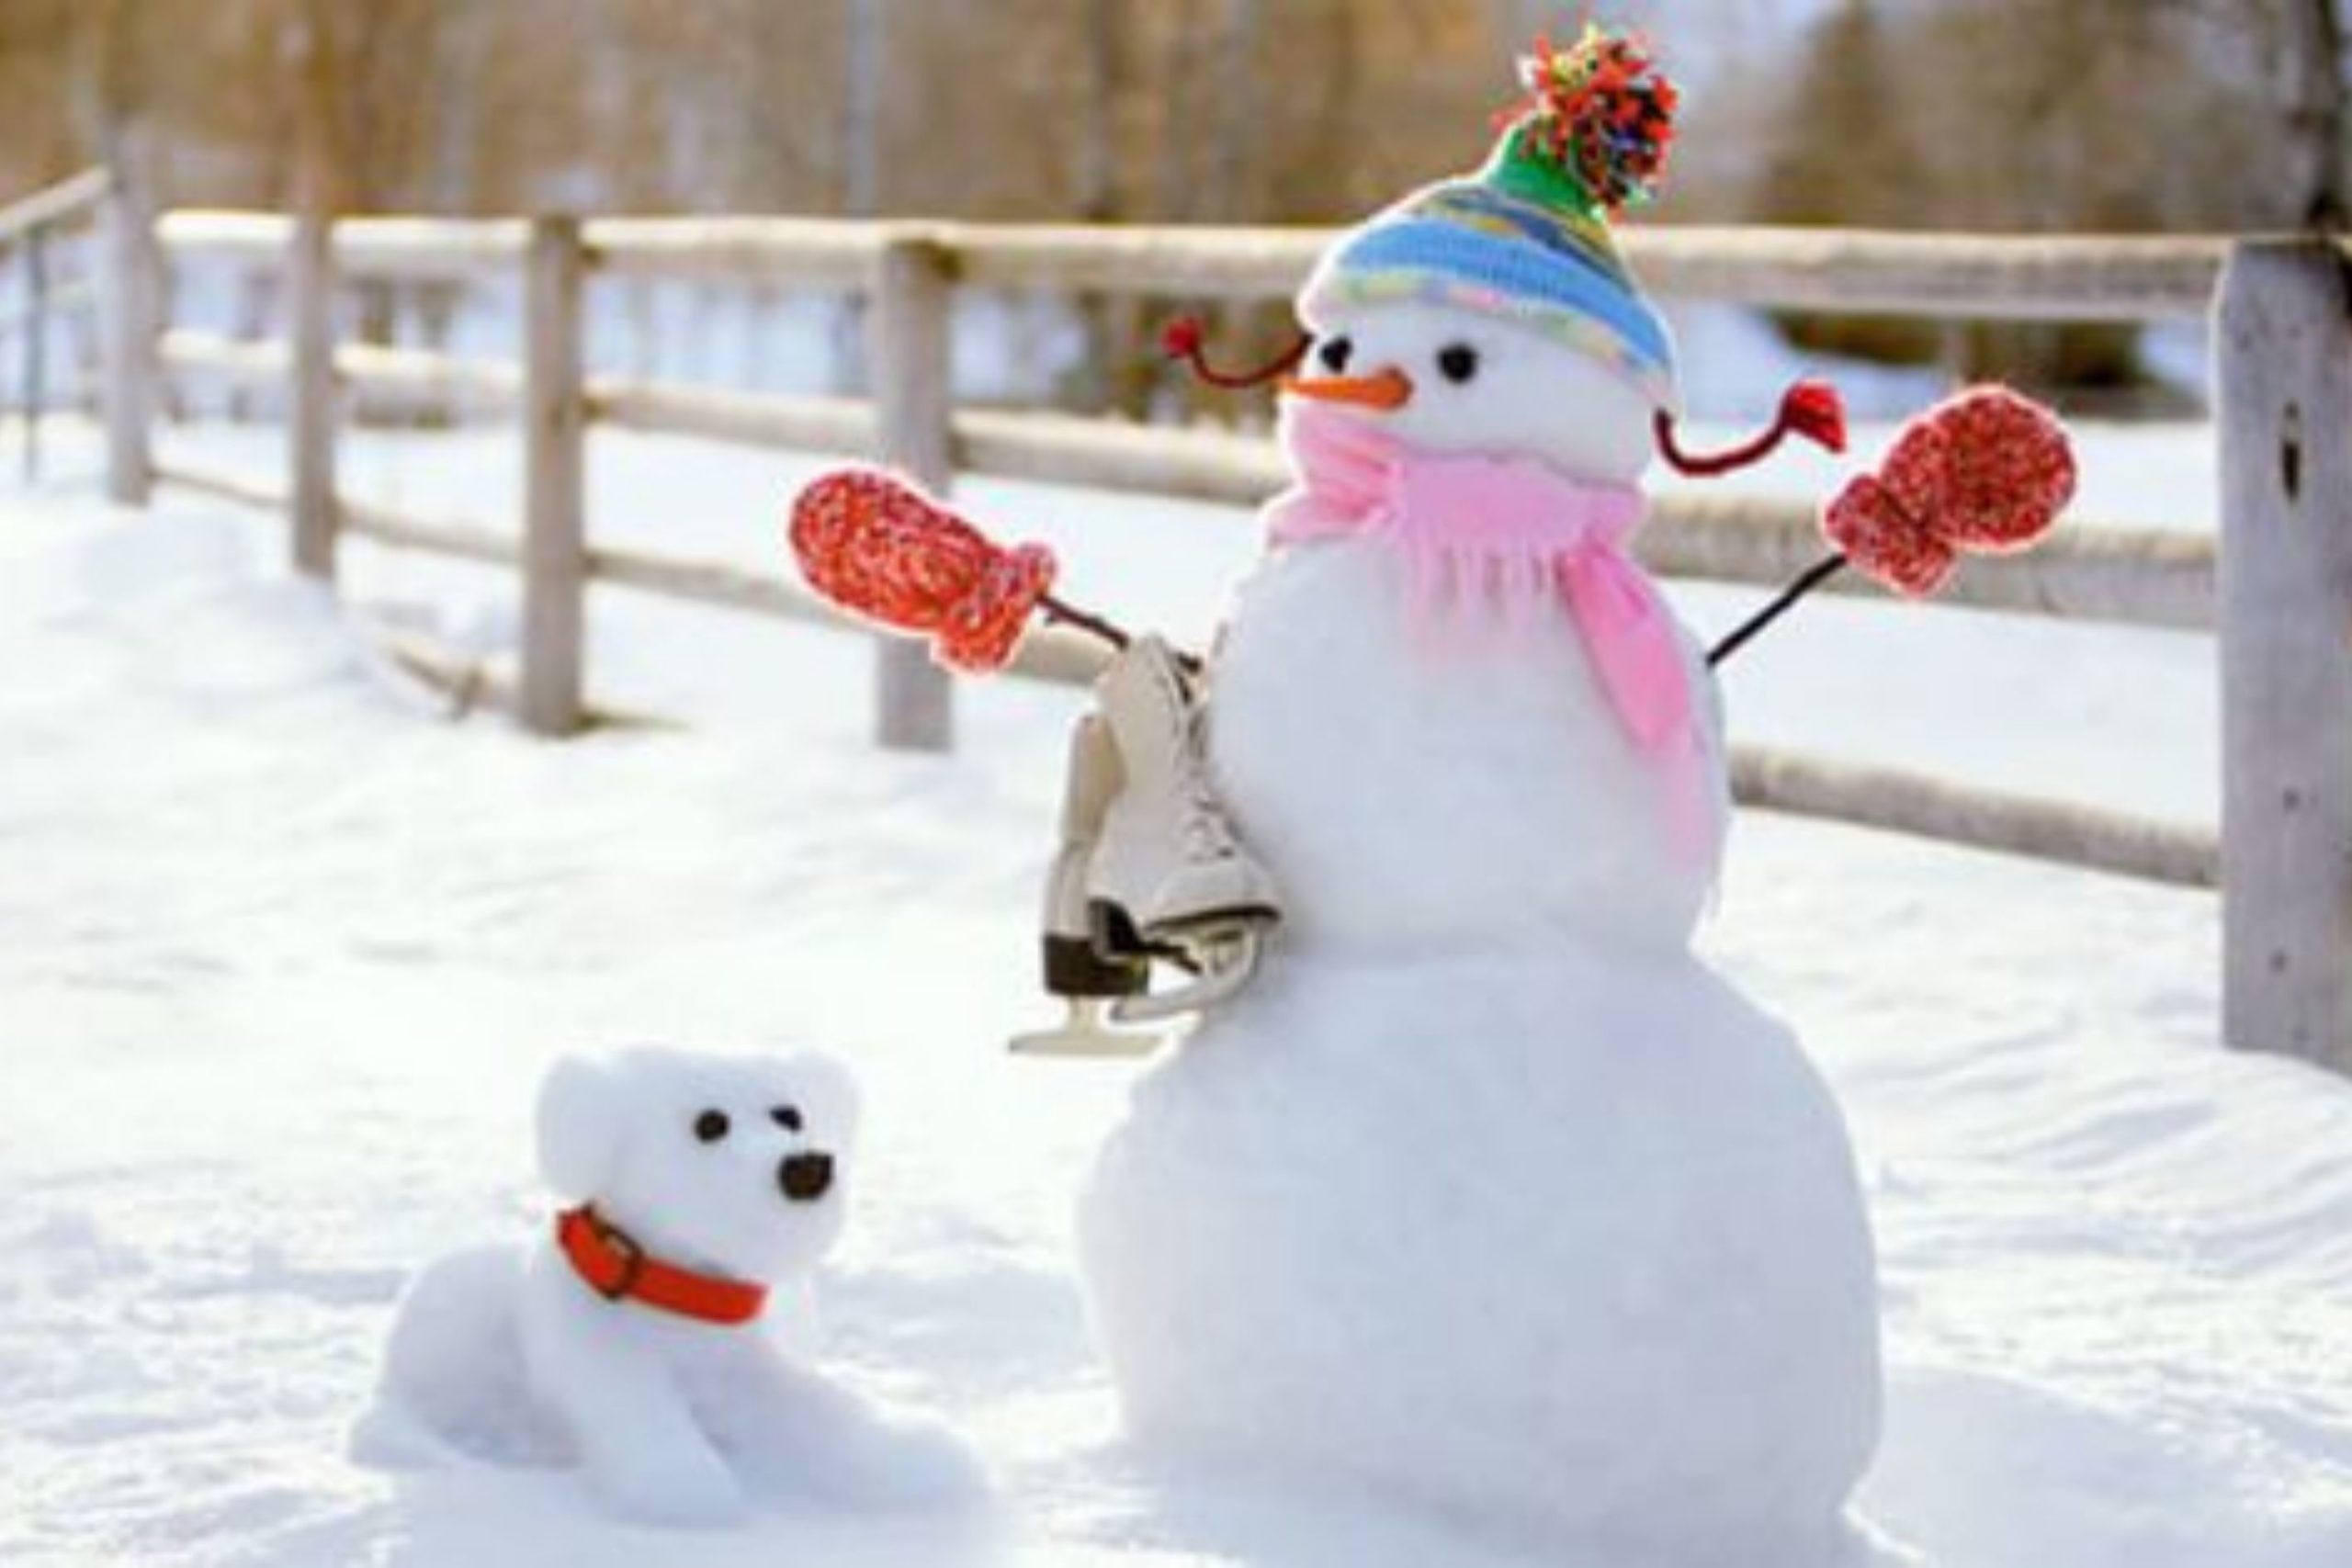 красивые снеговики из снега фото